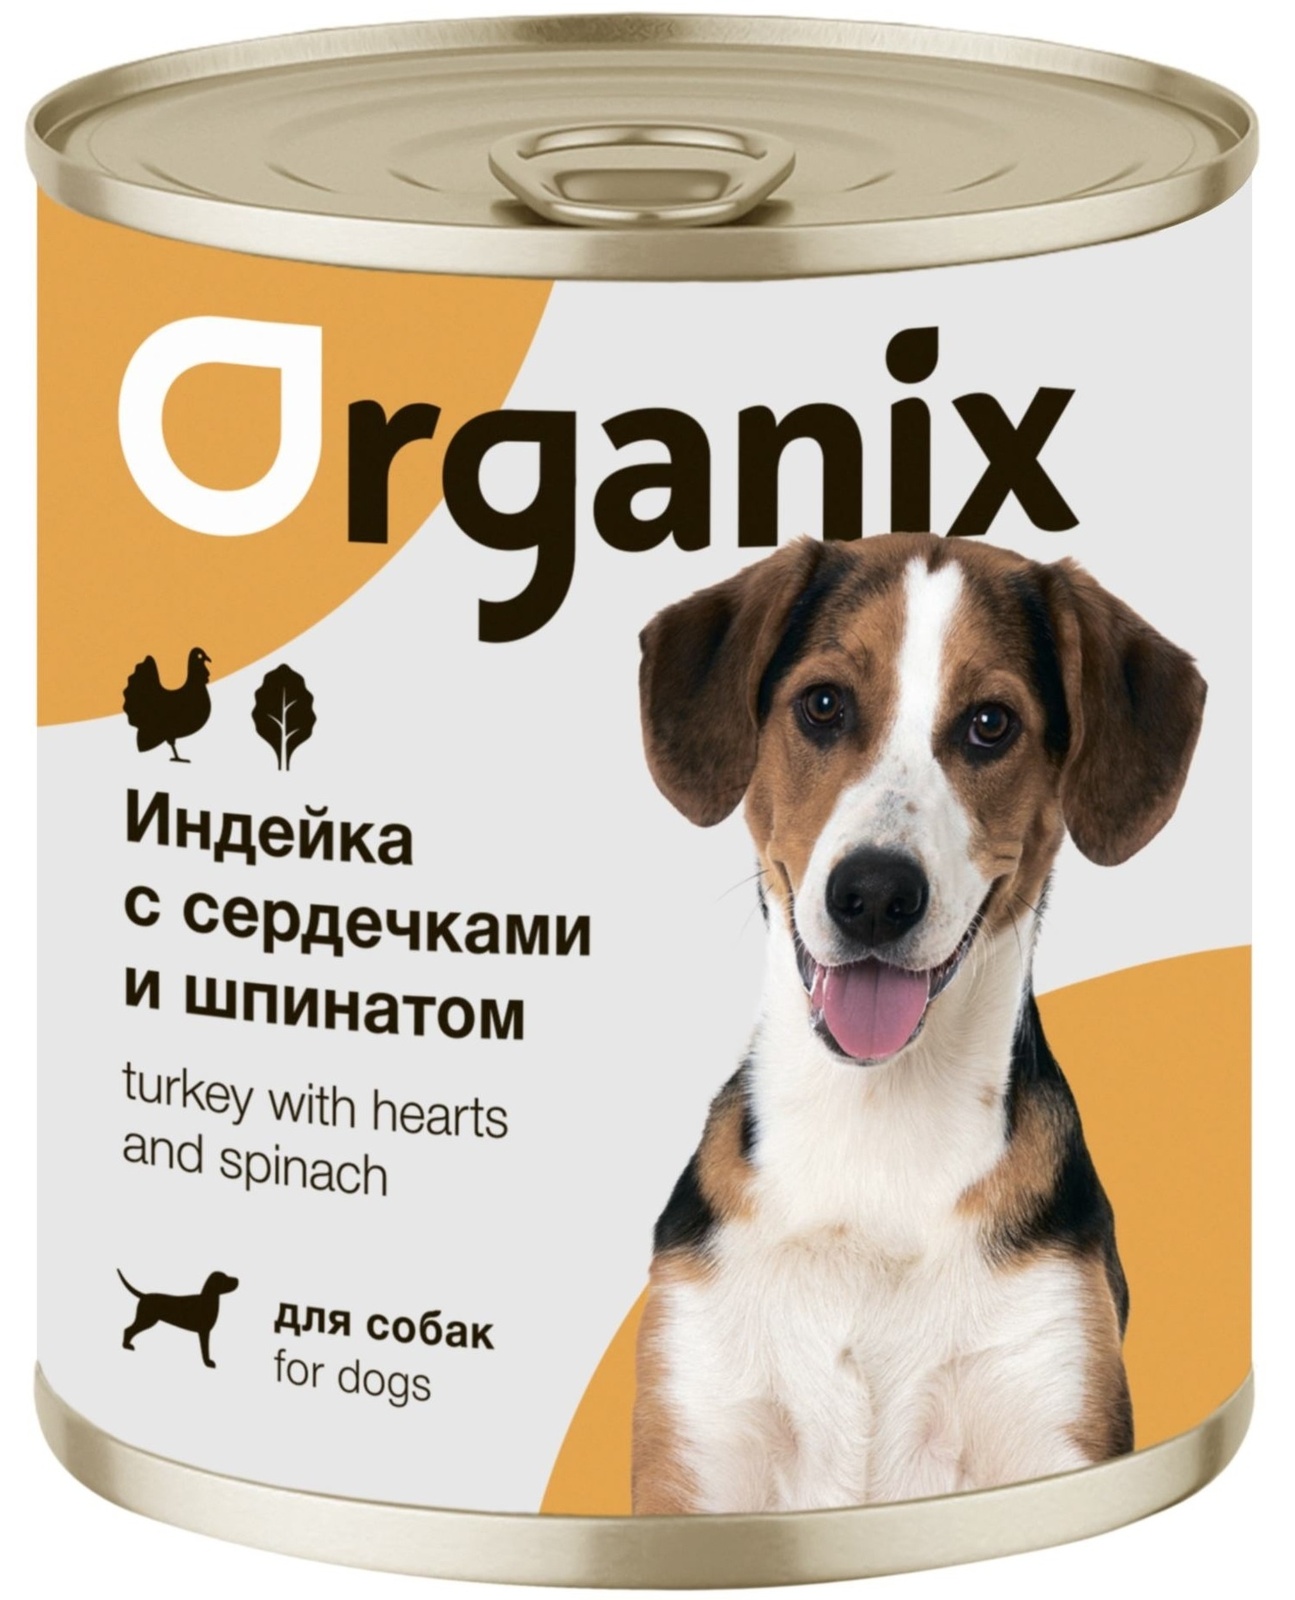 Organix консервы Organix консервы для собак Индейка с сердечками и шпинатом (400 г) organix консервы organix монобелковые премиум консервы для собак с гусем 400 г